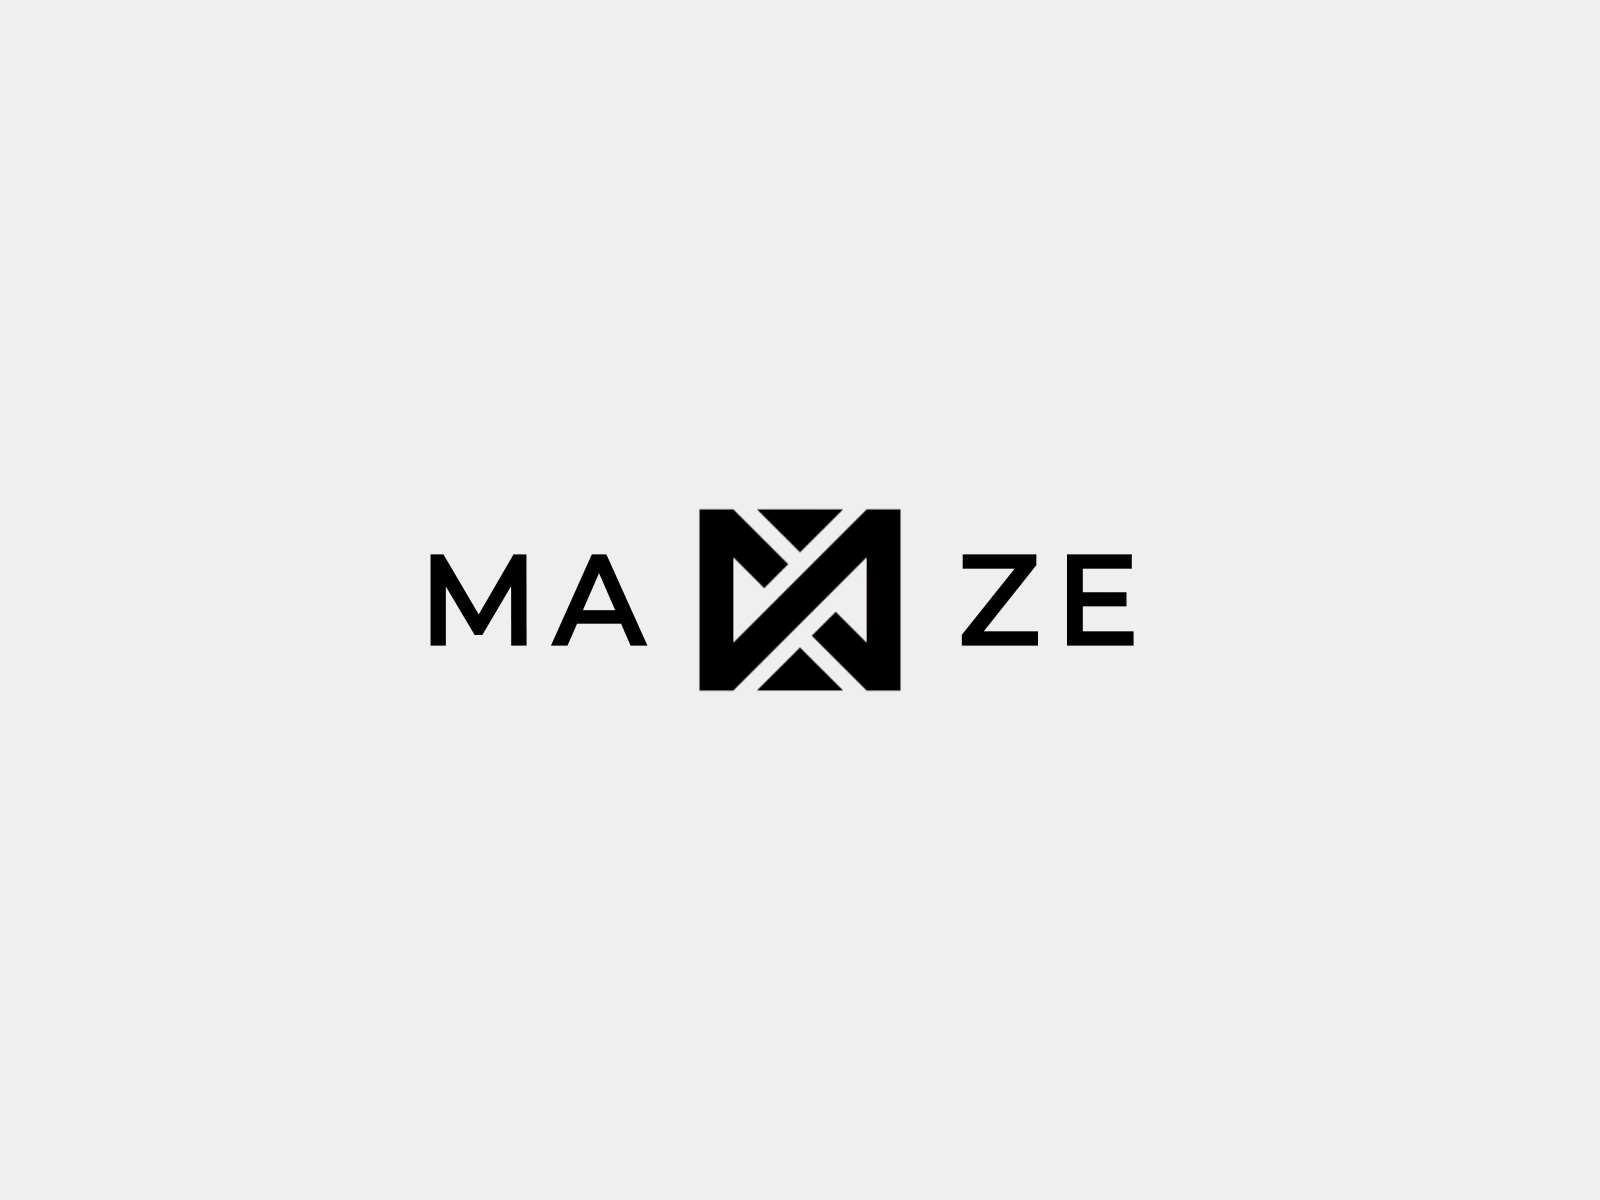 Maze - Logo Animation.